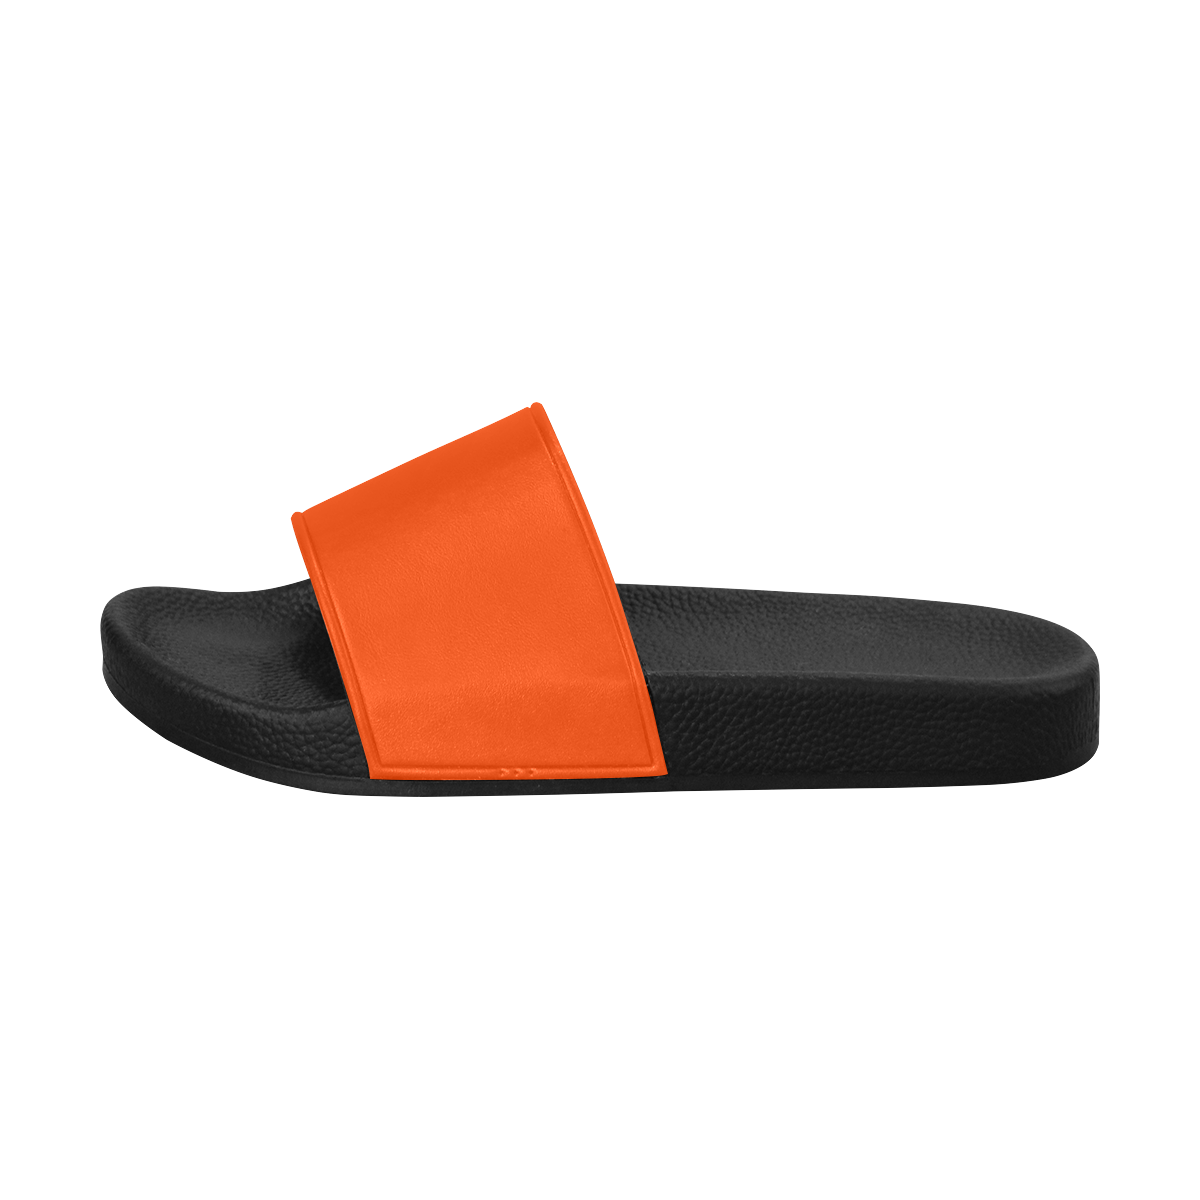 color orange red Men's Slide Sandals (Model 057)